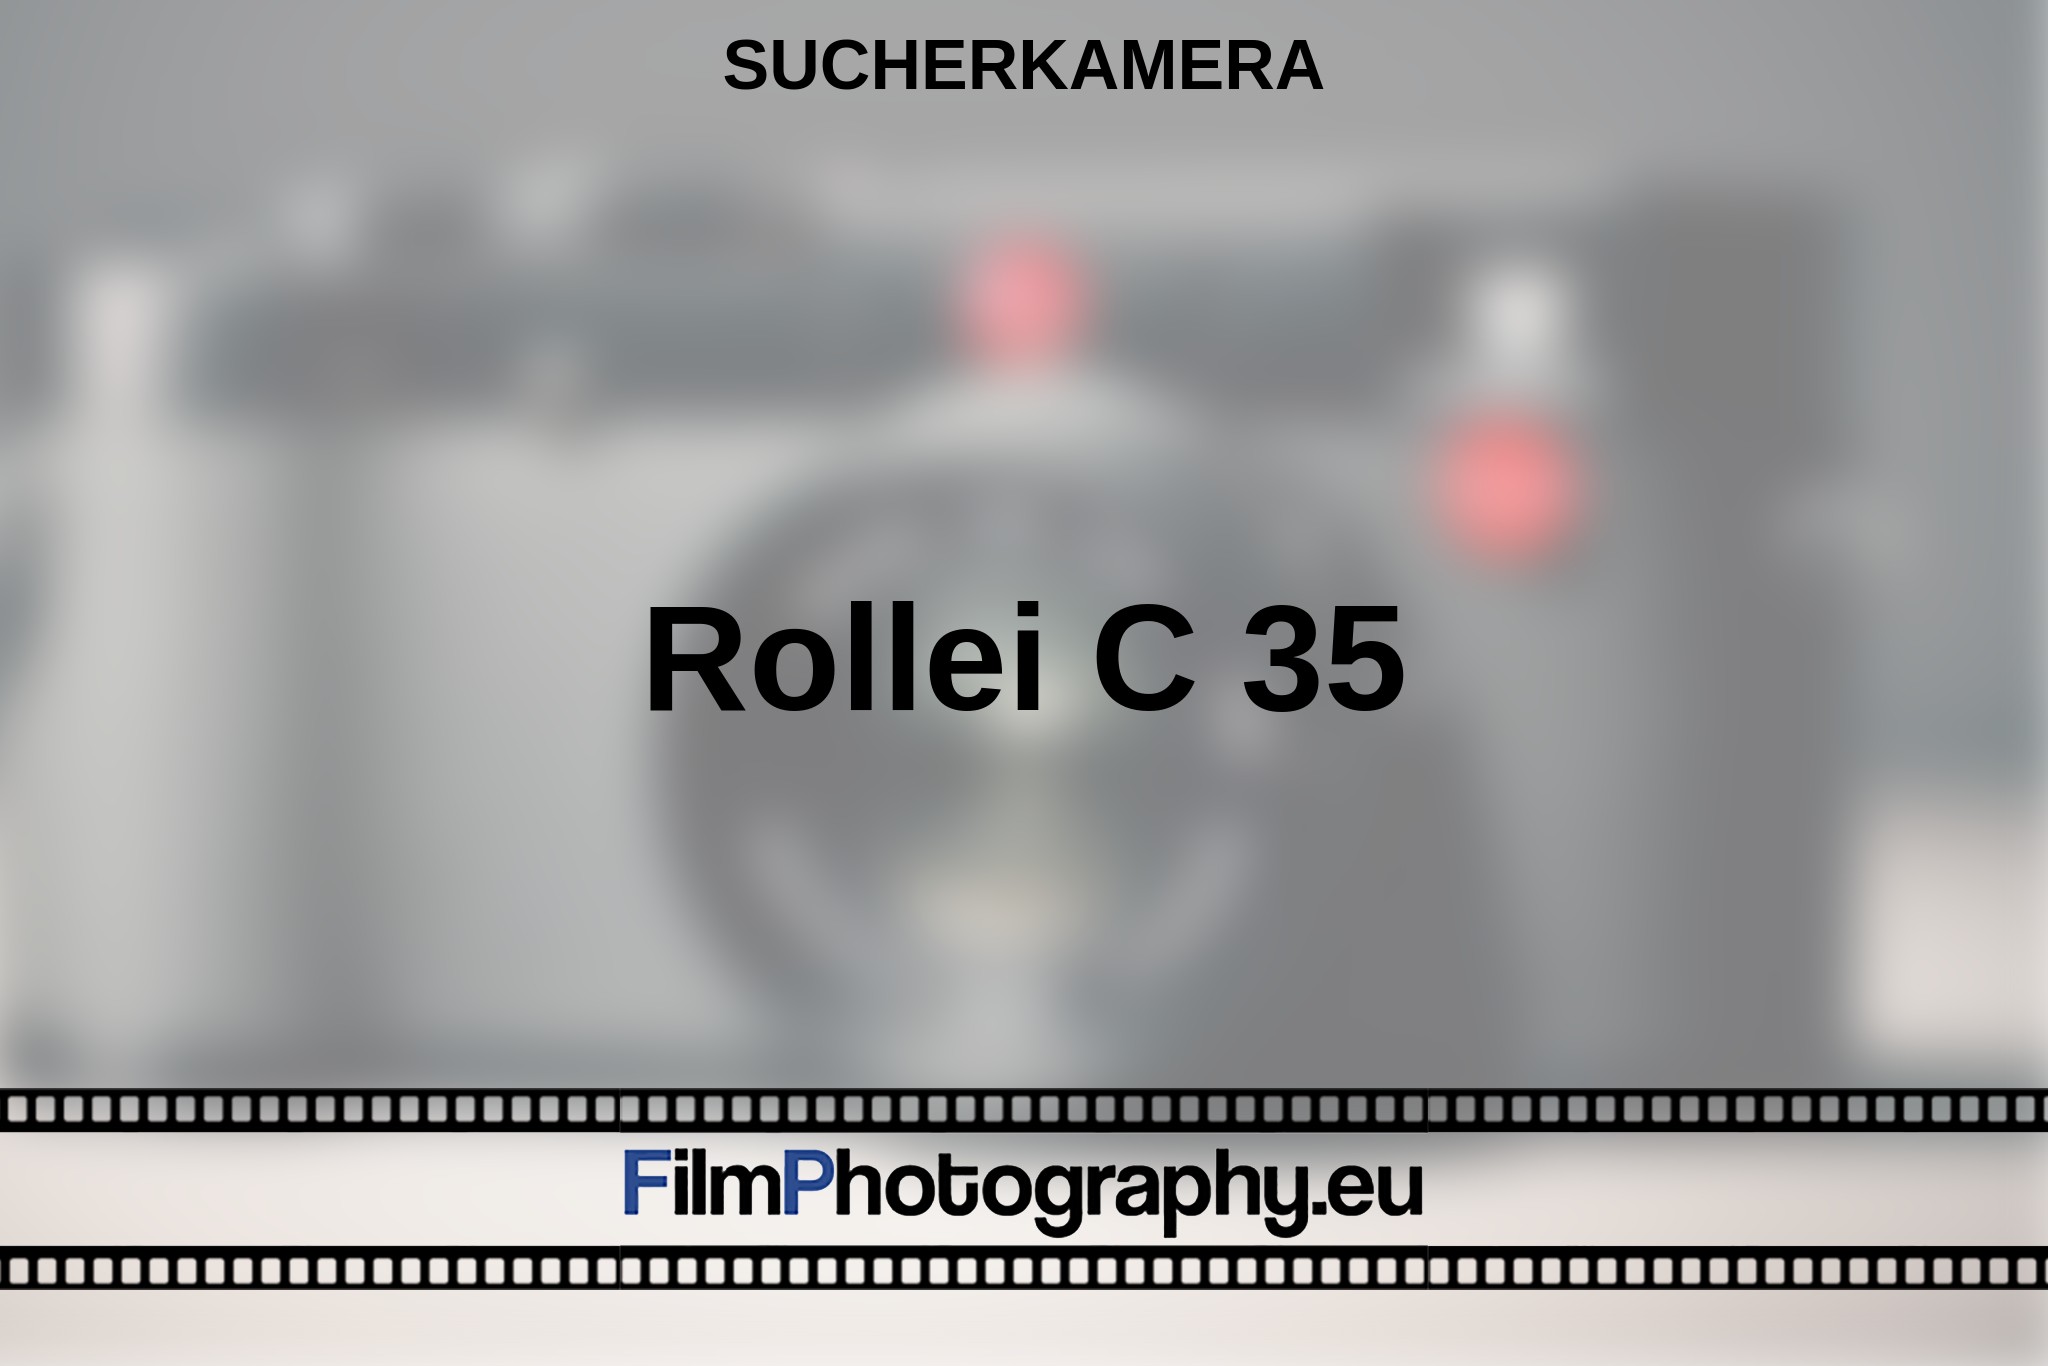 rollei-c-35-sucherkamera-bnv.jpg